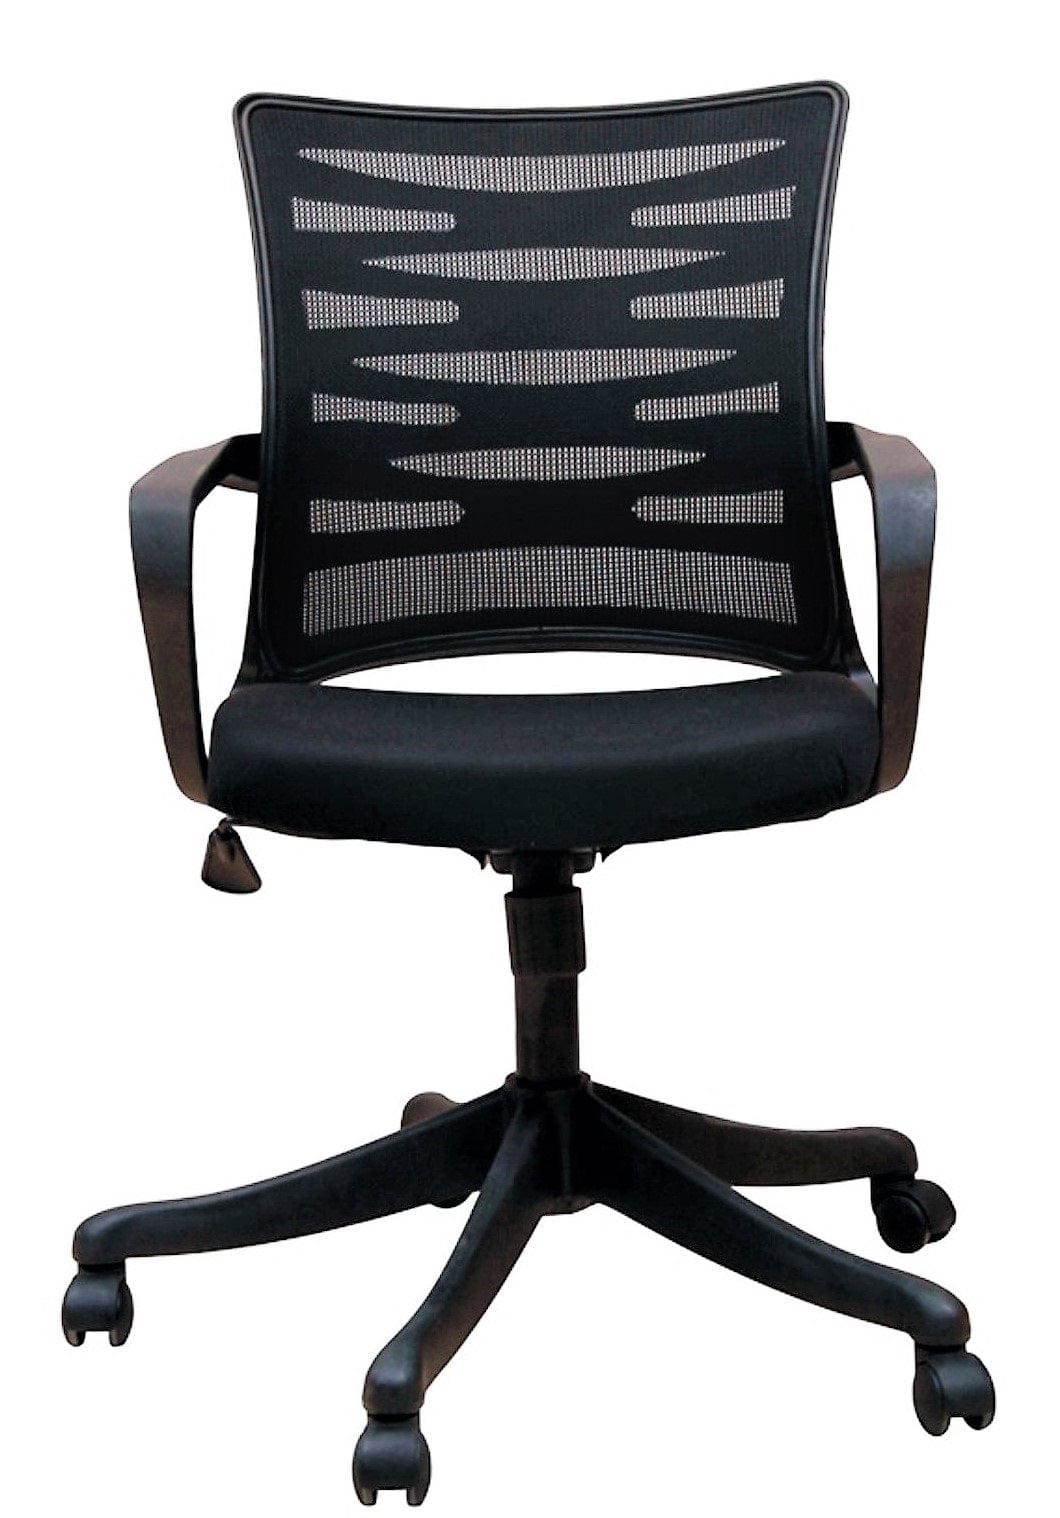 Adiko Zigzag Mesh chair in Black